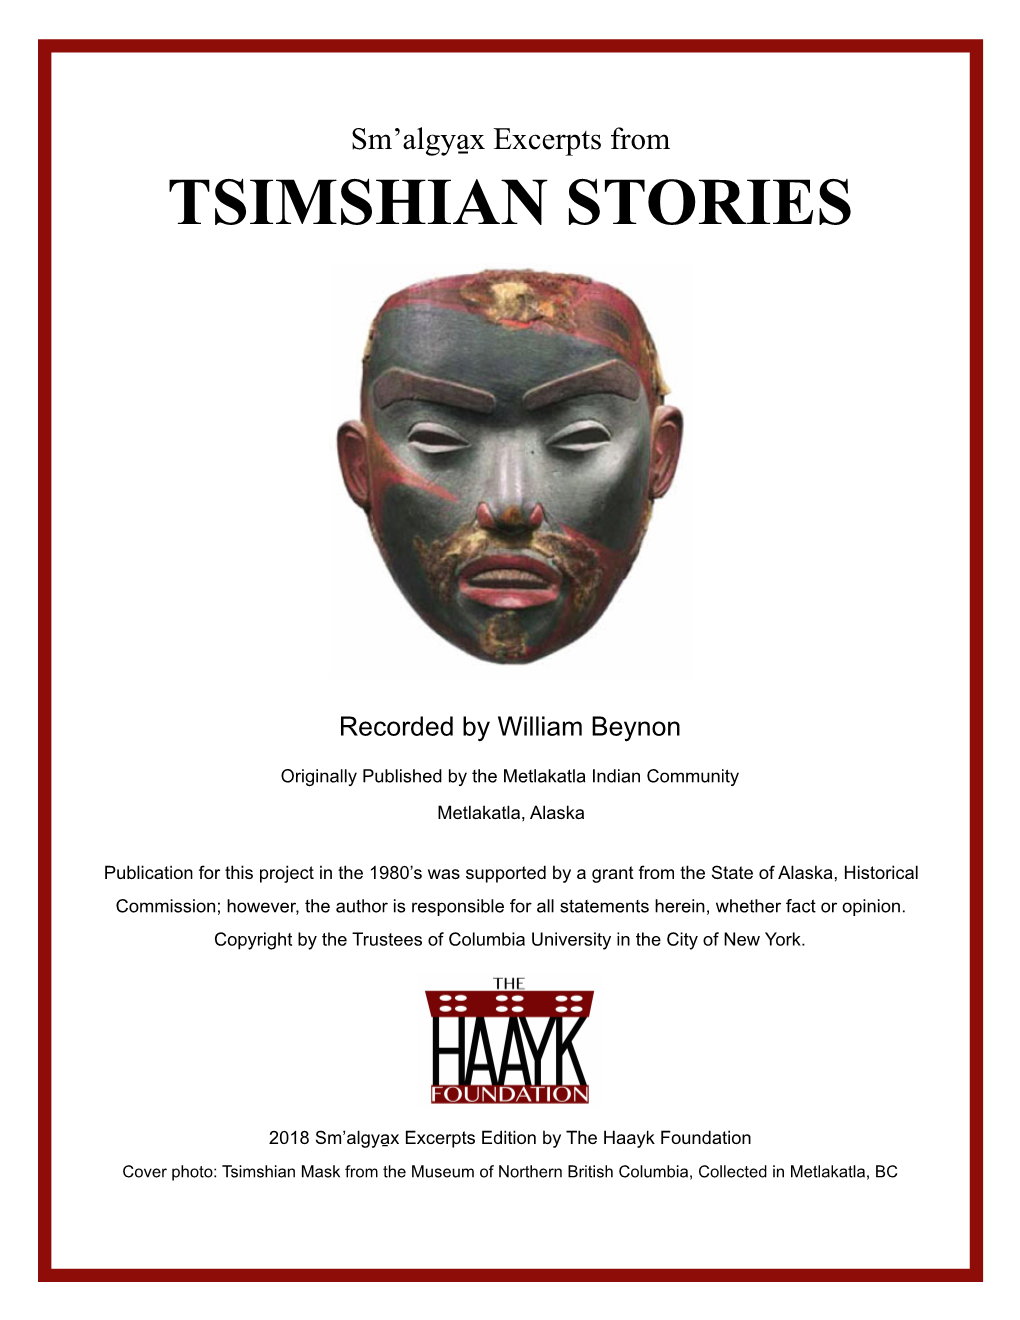 Tsimshian Stories 2018